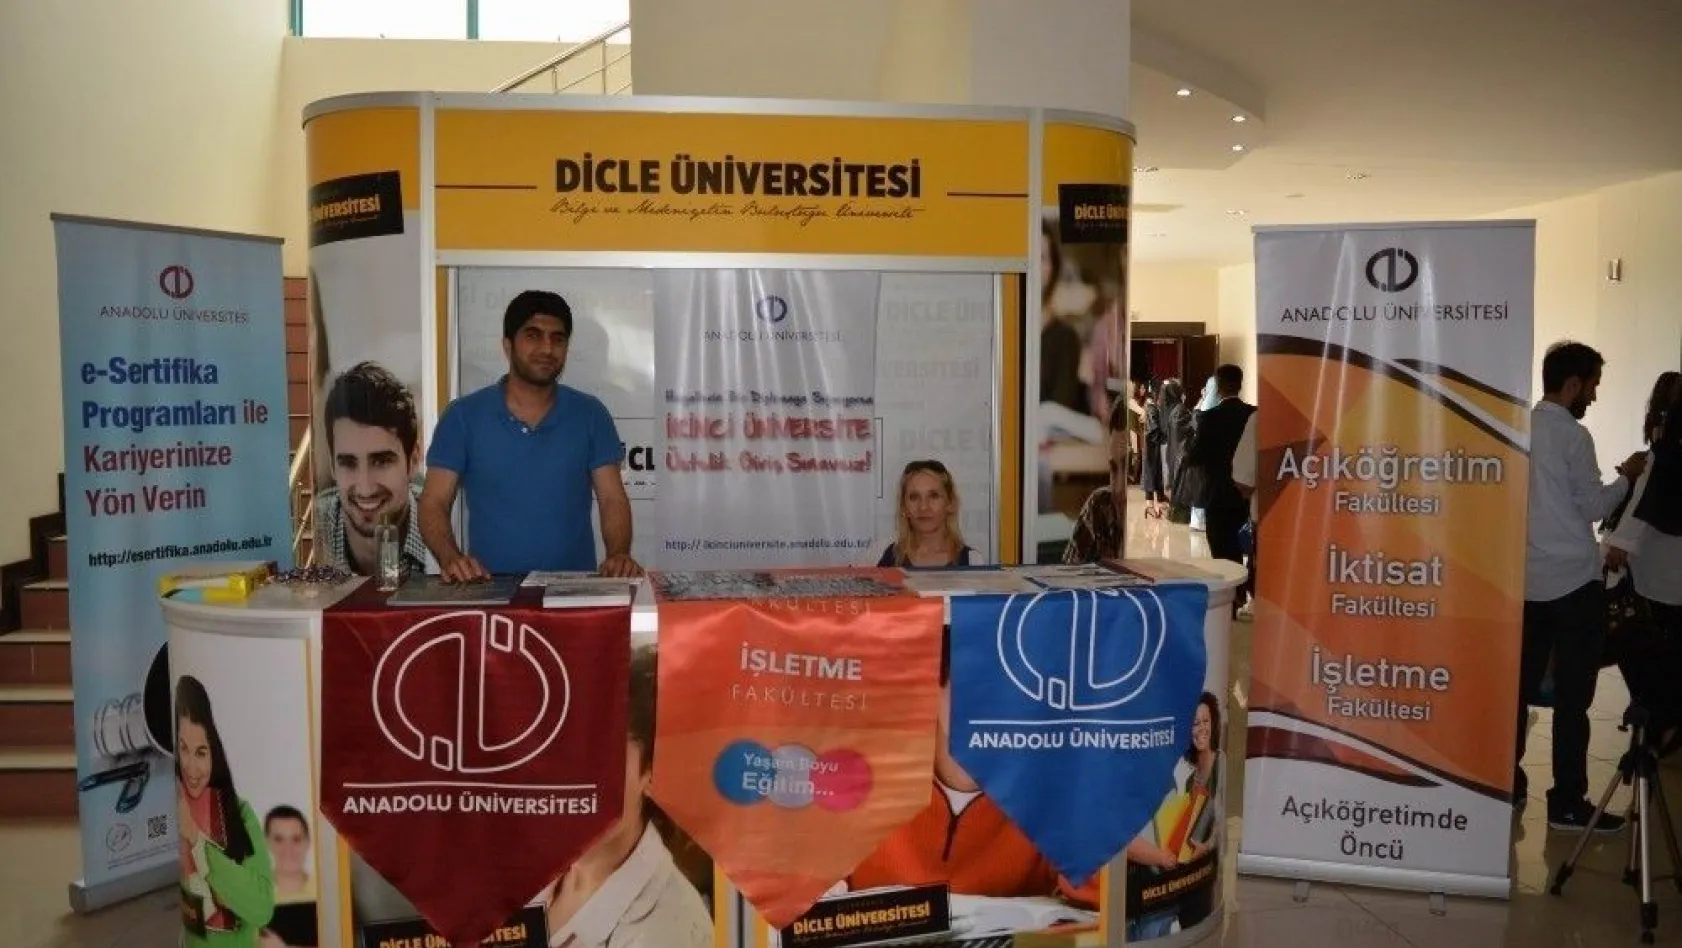 Anadolu Üniversitesi, DÜ'de stant açtı
